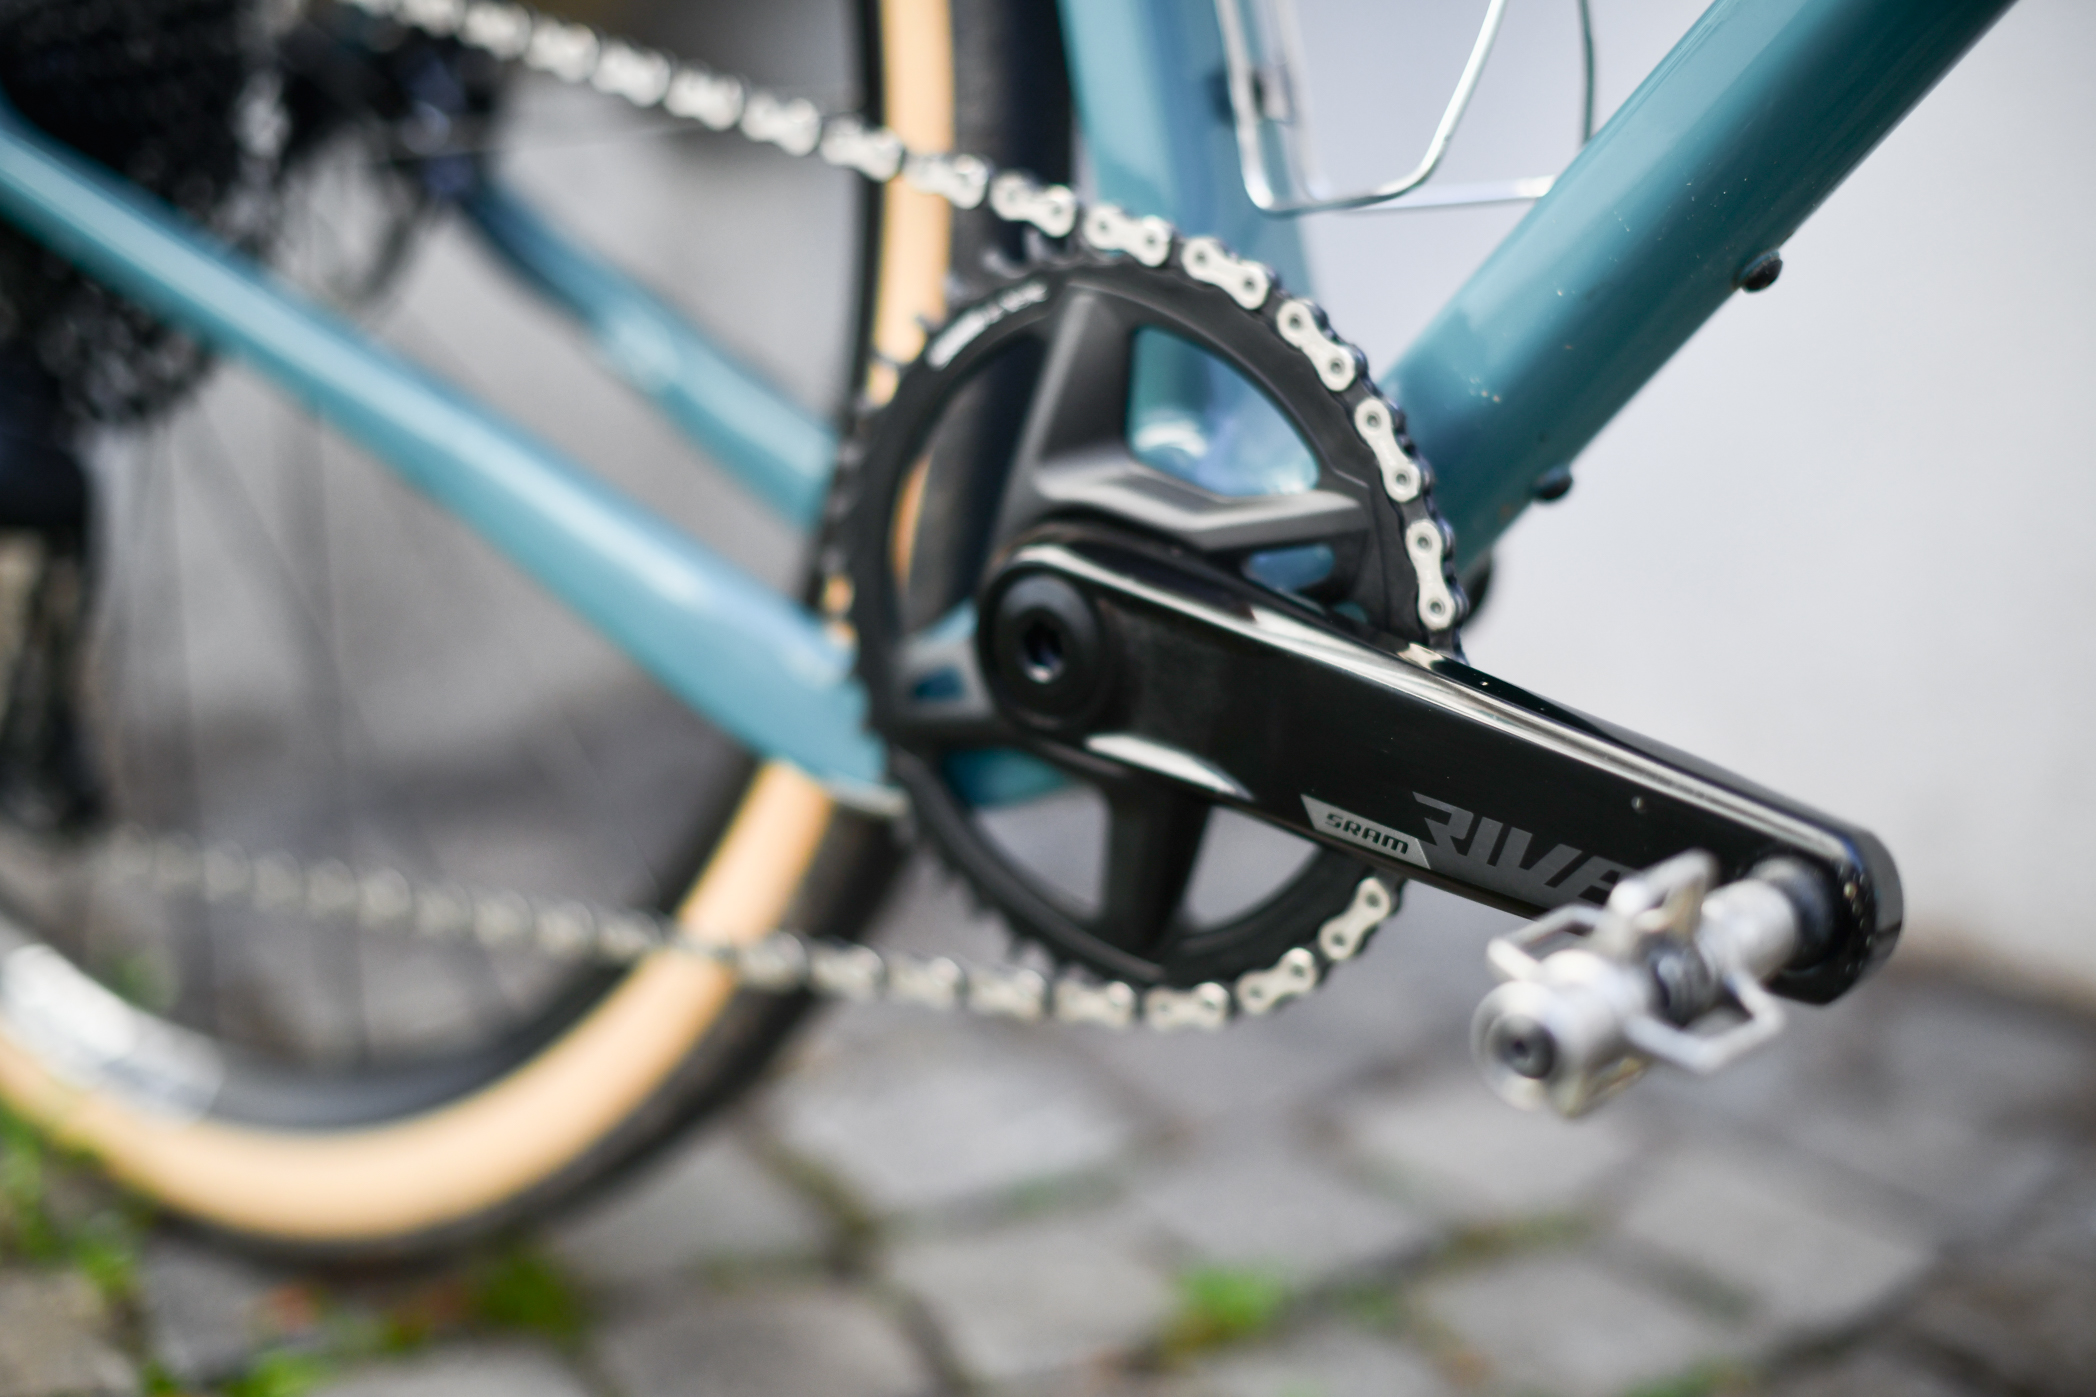 Bike Check: ein schönes OPEN WI.DE. mit vielen neuen technischen Entwicklungen 9